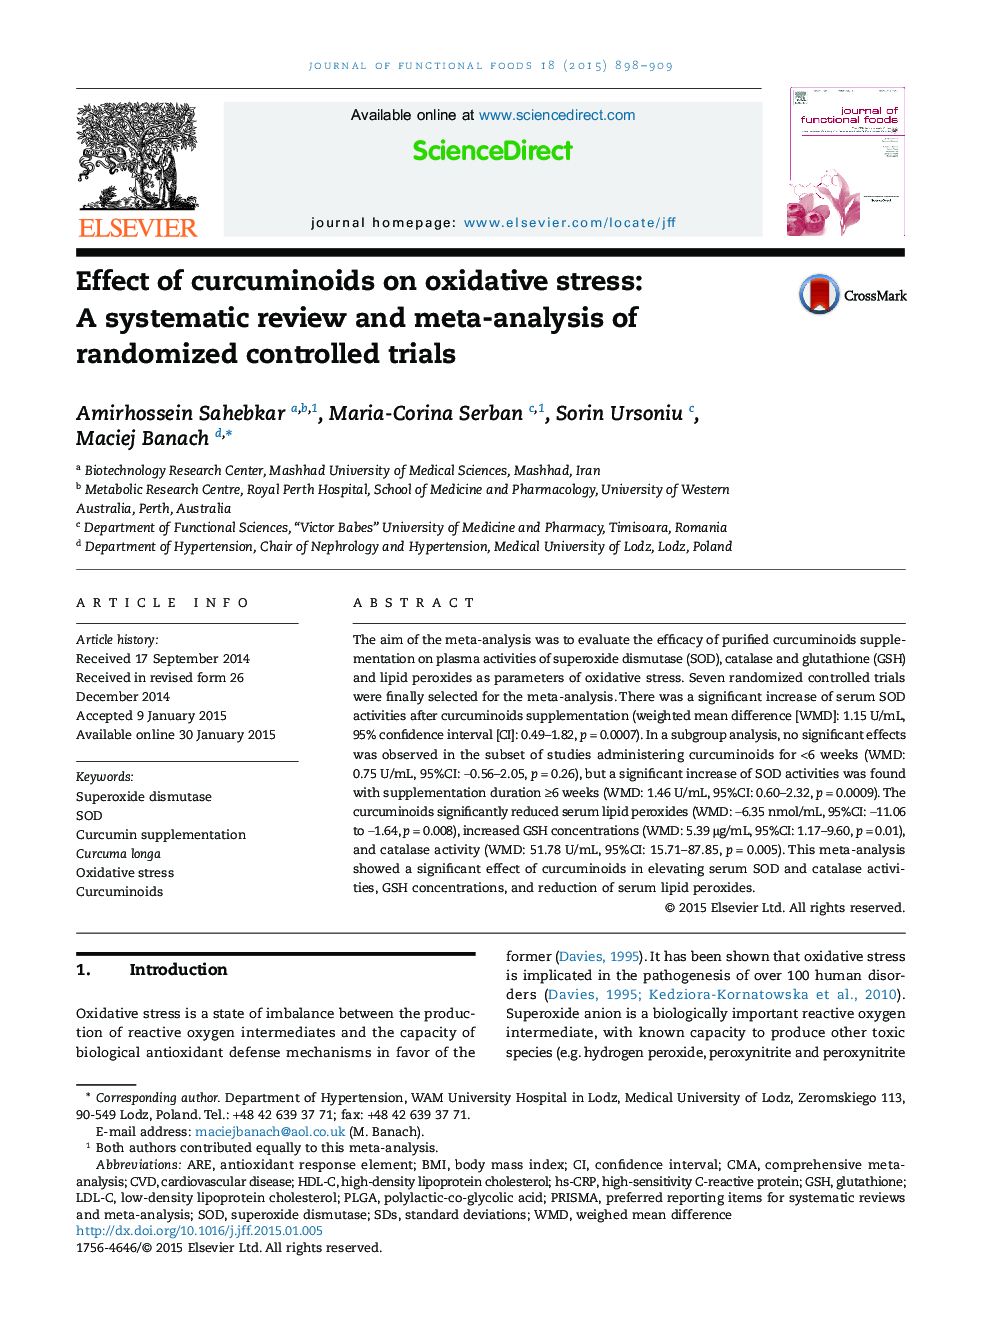 اثر کورکومینیوئید ها بر استرس اکسیداتیو: یک بررسی سیستماتیک و متاآنالیز آزمایشات تصادفی کنترل شده 